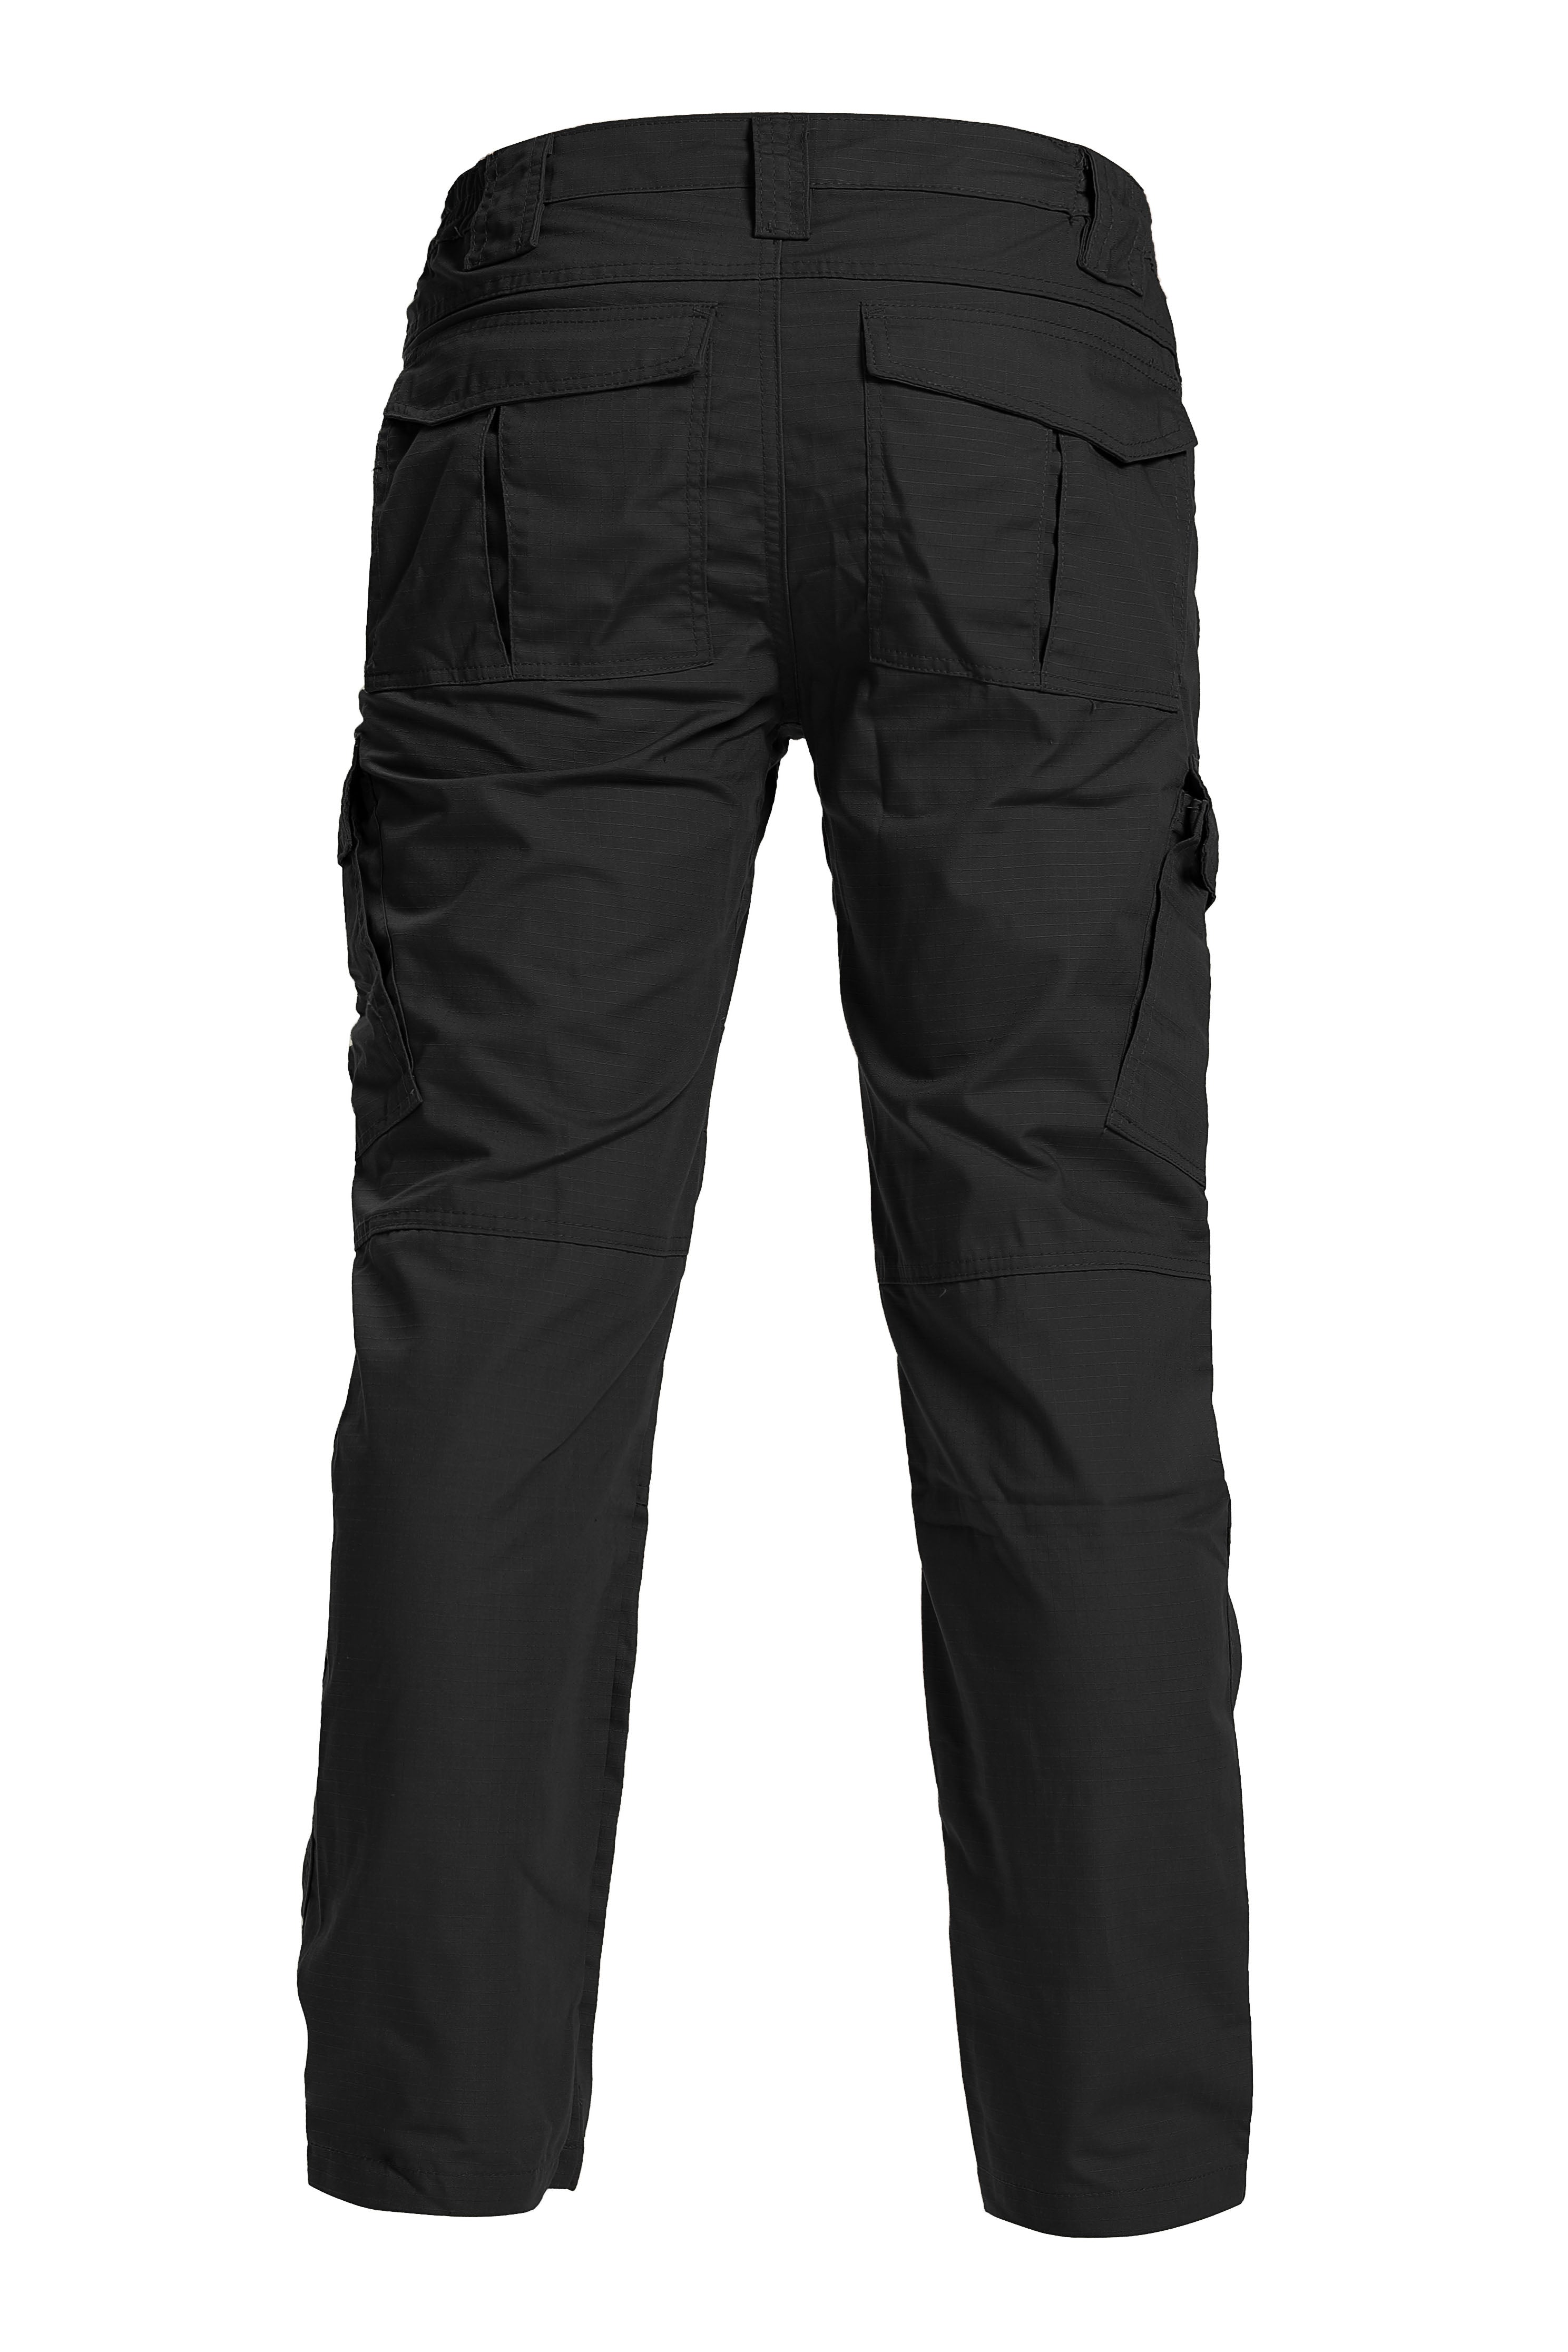 Dickies Eisenhower Multipocket Work Trousers Black Navy EH26800 Cargo Pants  | eBay